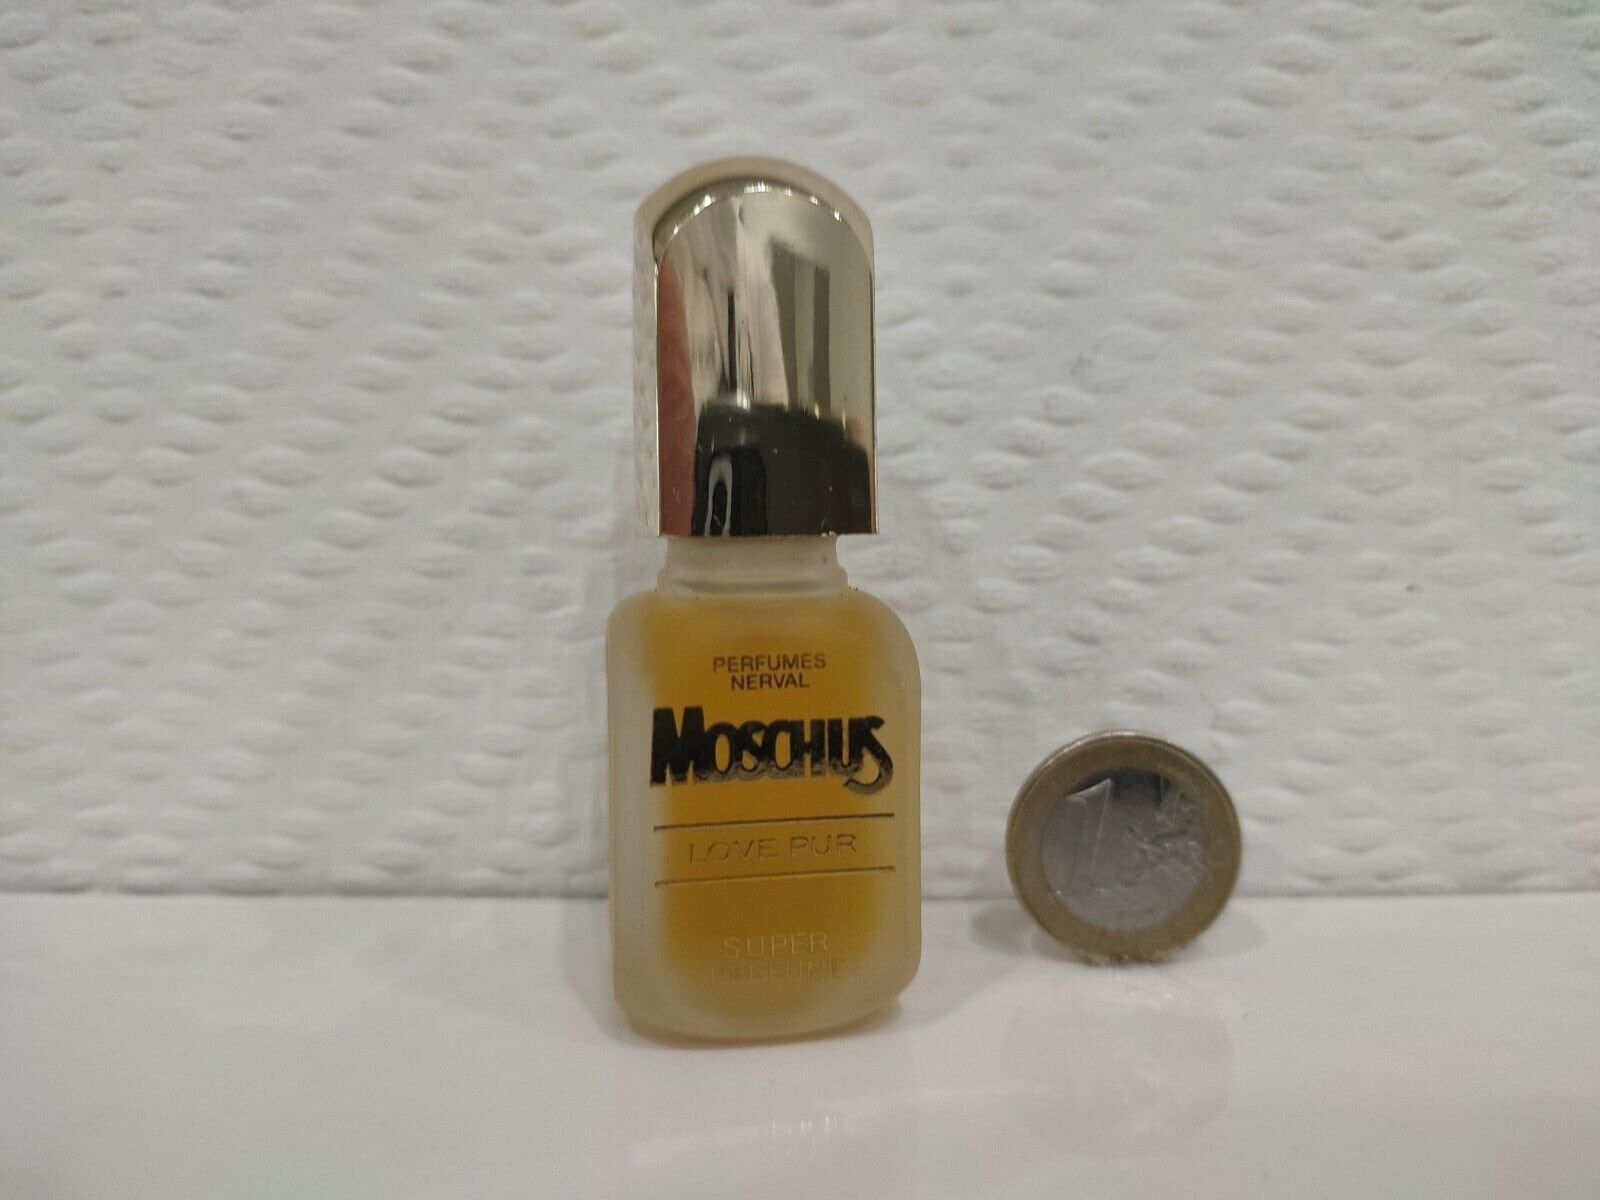 Nervöse Moschus Liebe Pur Super Parfüm 9, 5 Ml Rar Vintage von Etsy - miniperfumes